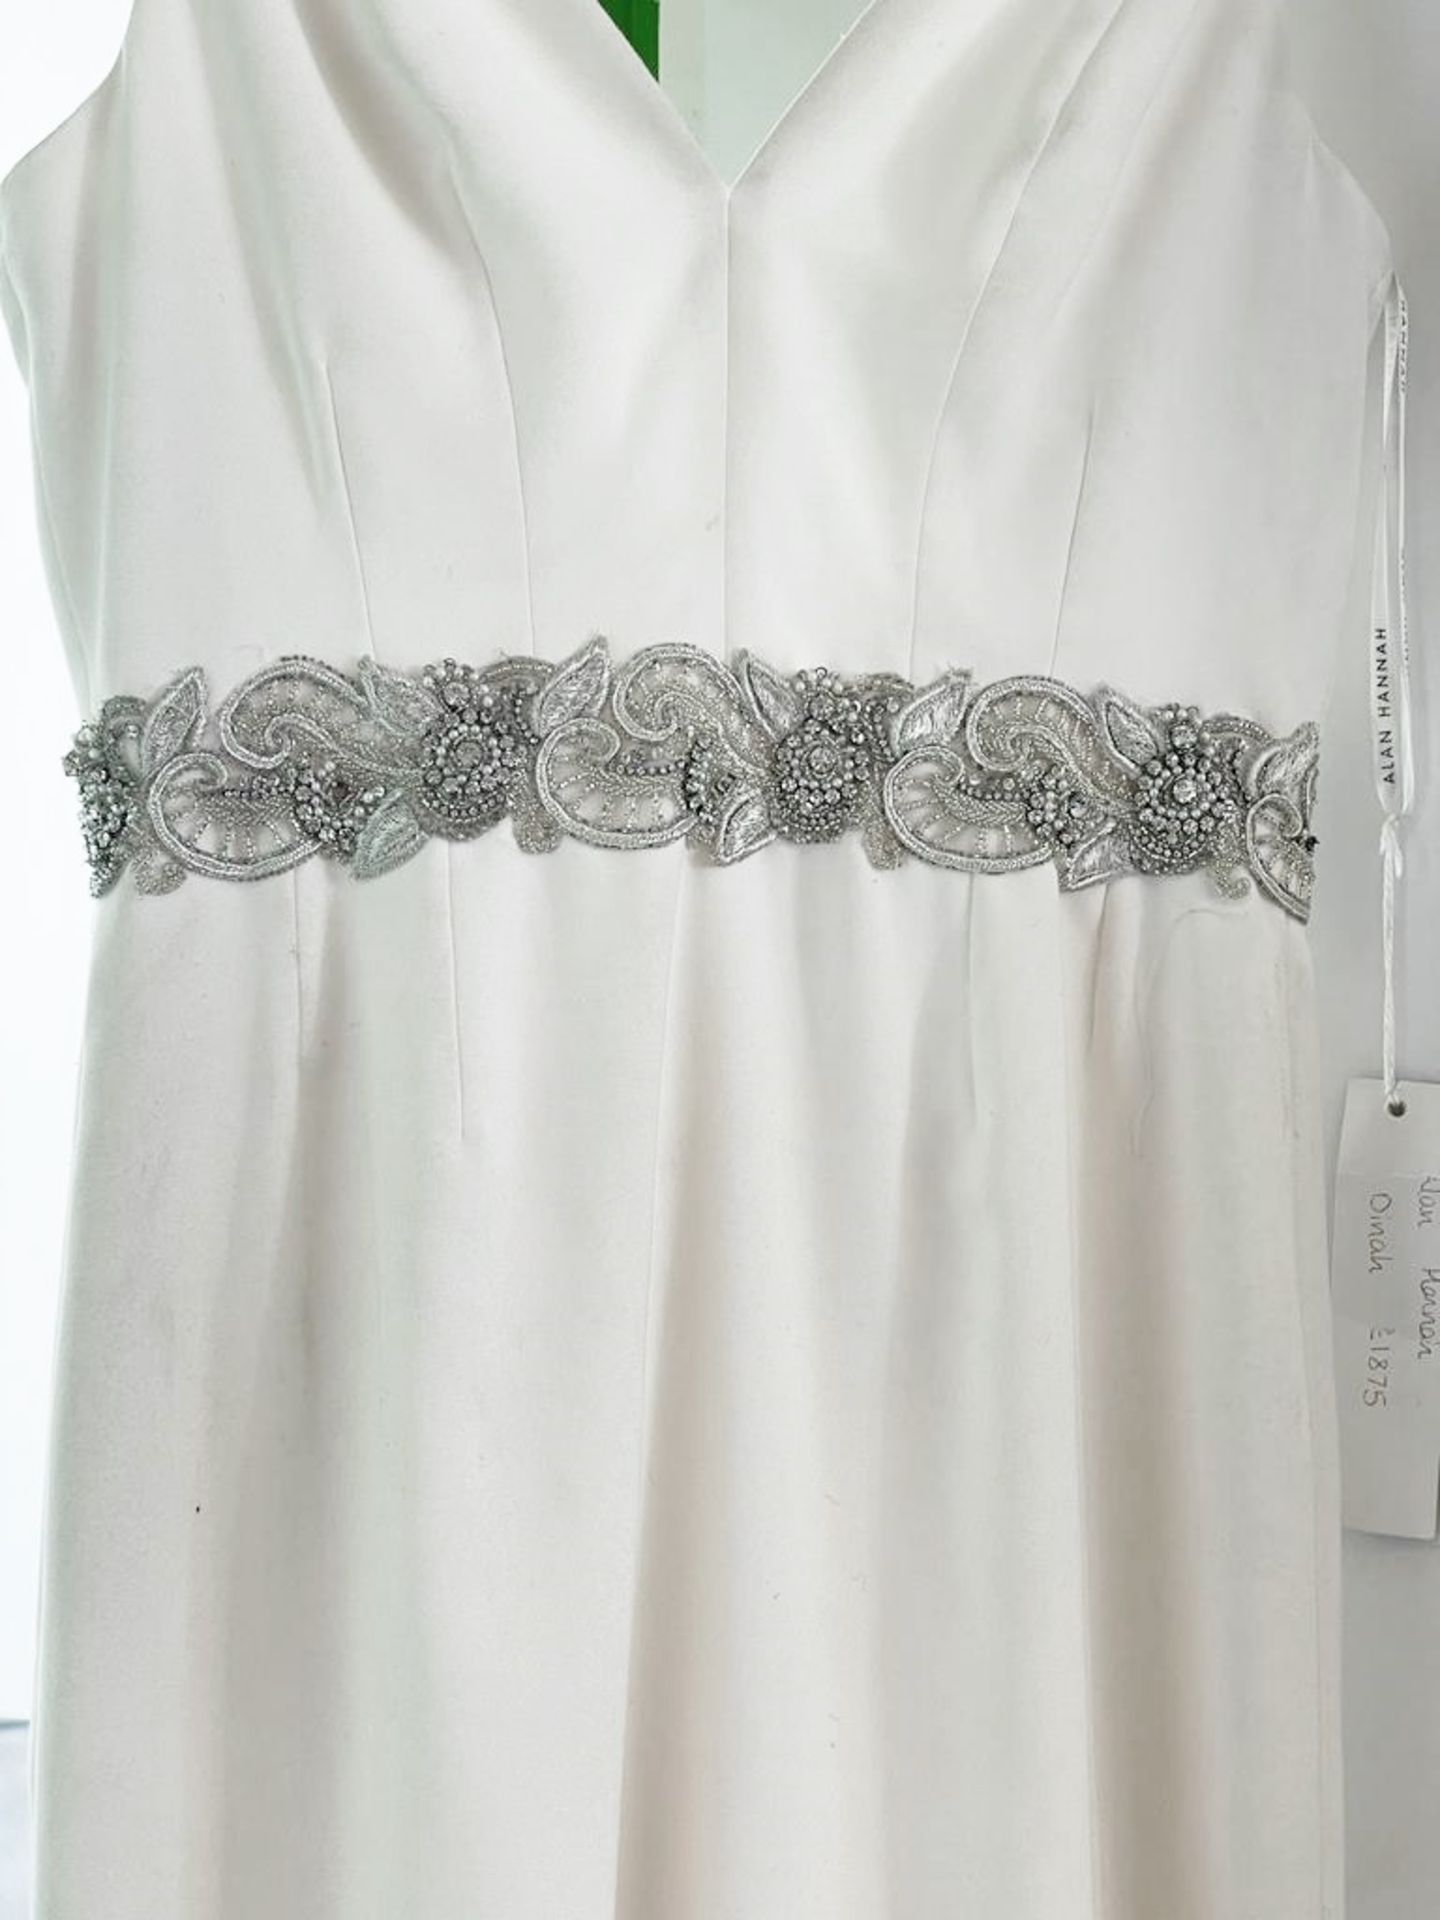 1 x ALAN HANNAH 'Jessica' Designer Crepe Wedding Dress Bridal Gown, With Embellished Belt - Made - Image 2 of 14